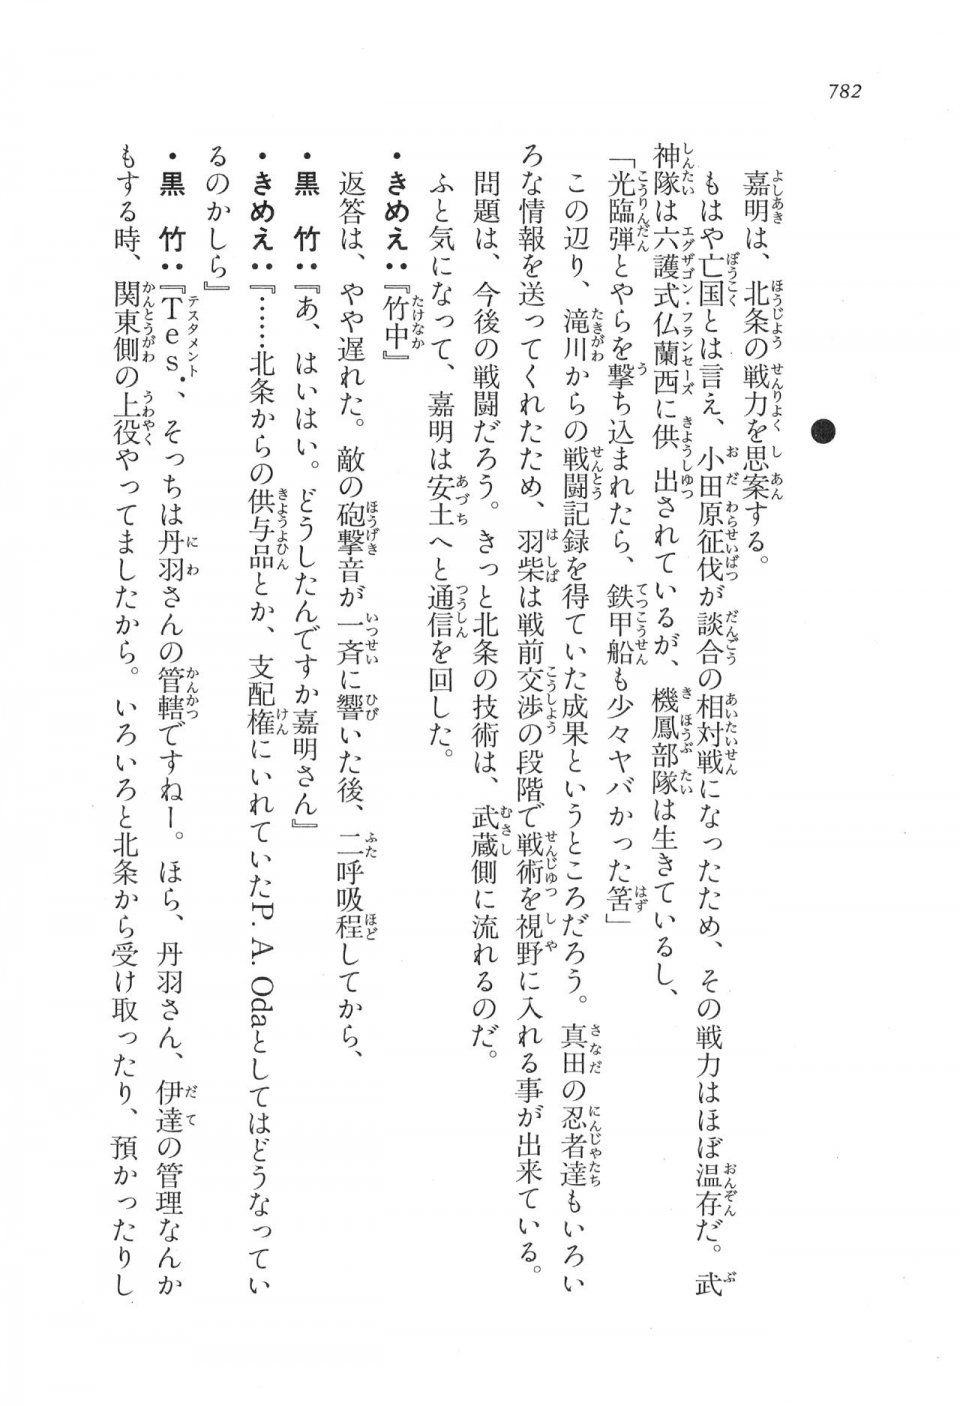 Kyoukai Senjou no Horizon LN Vol 17(7B) - Photo #784